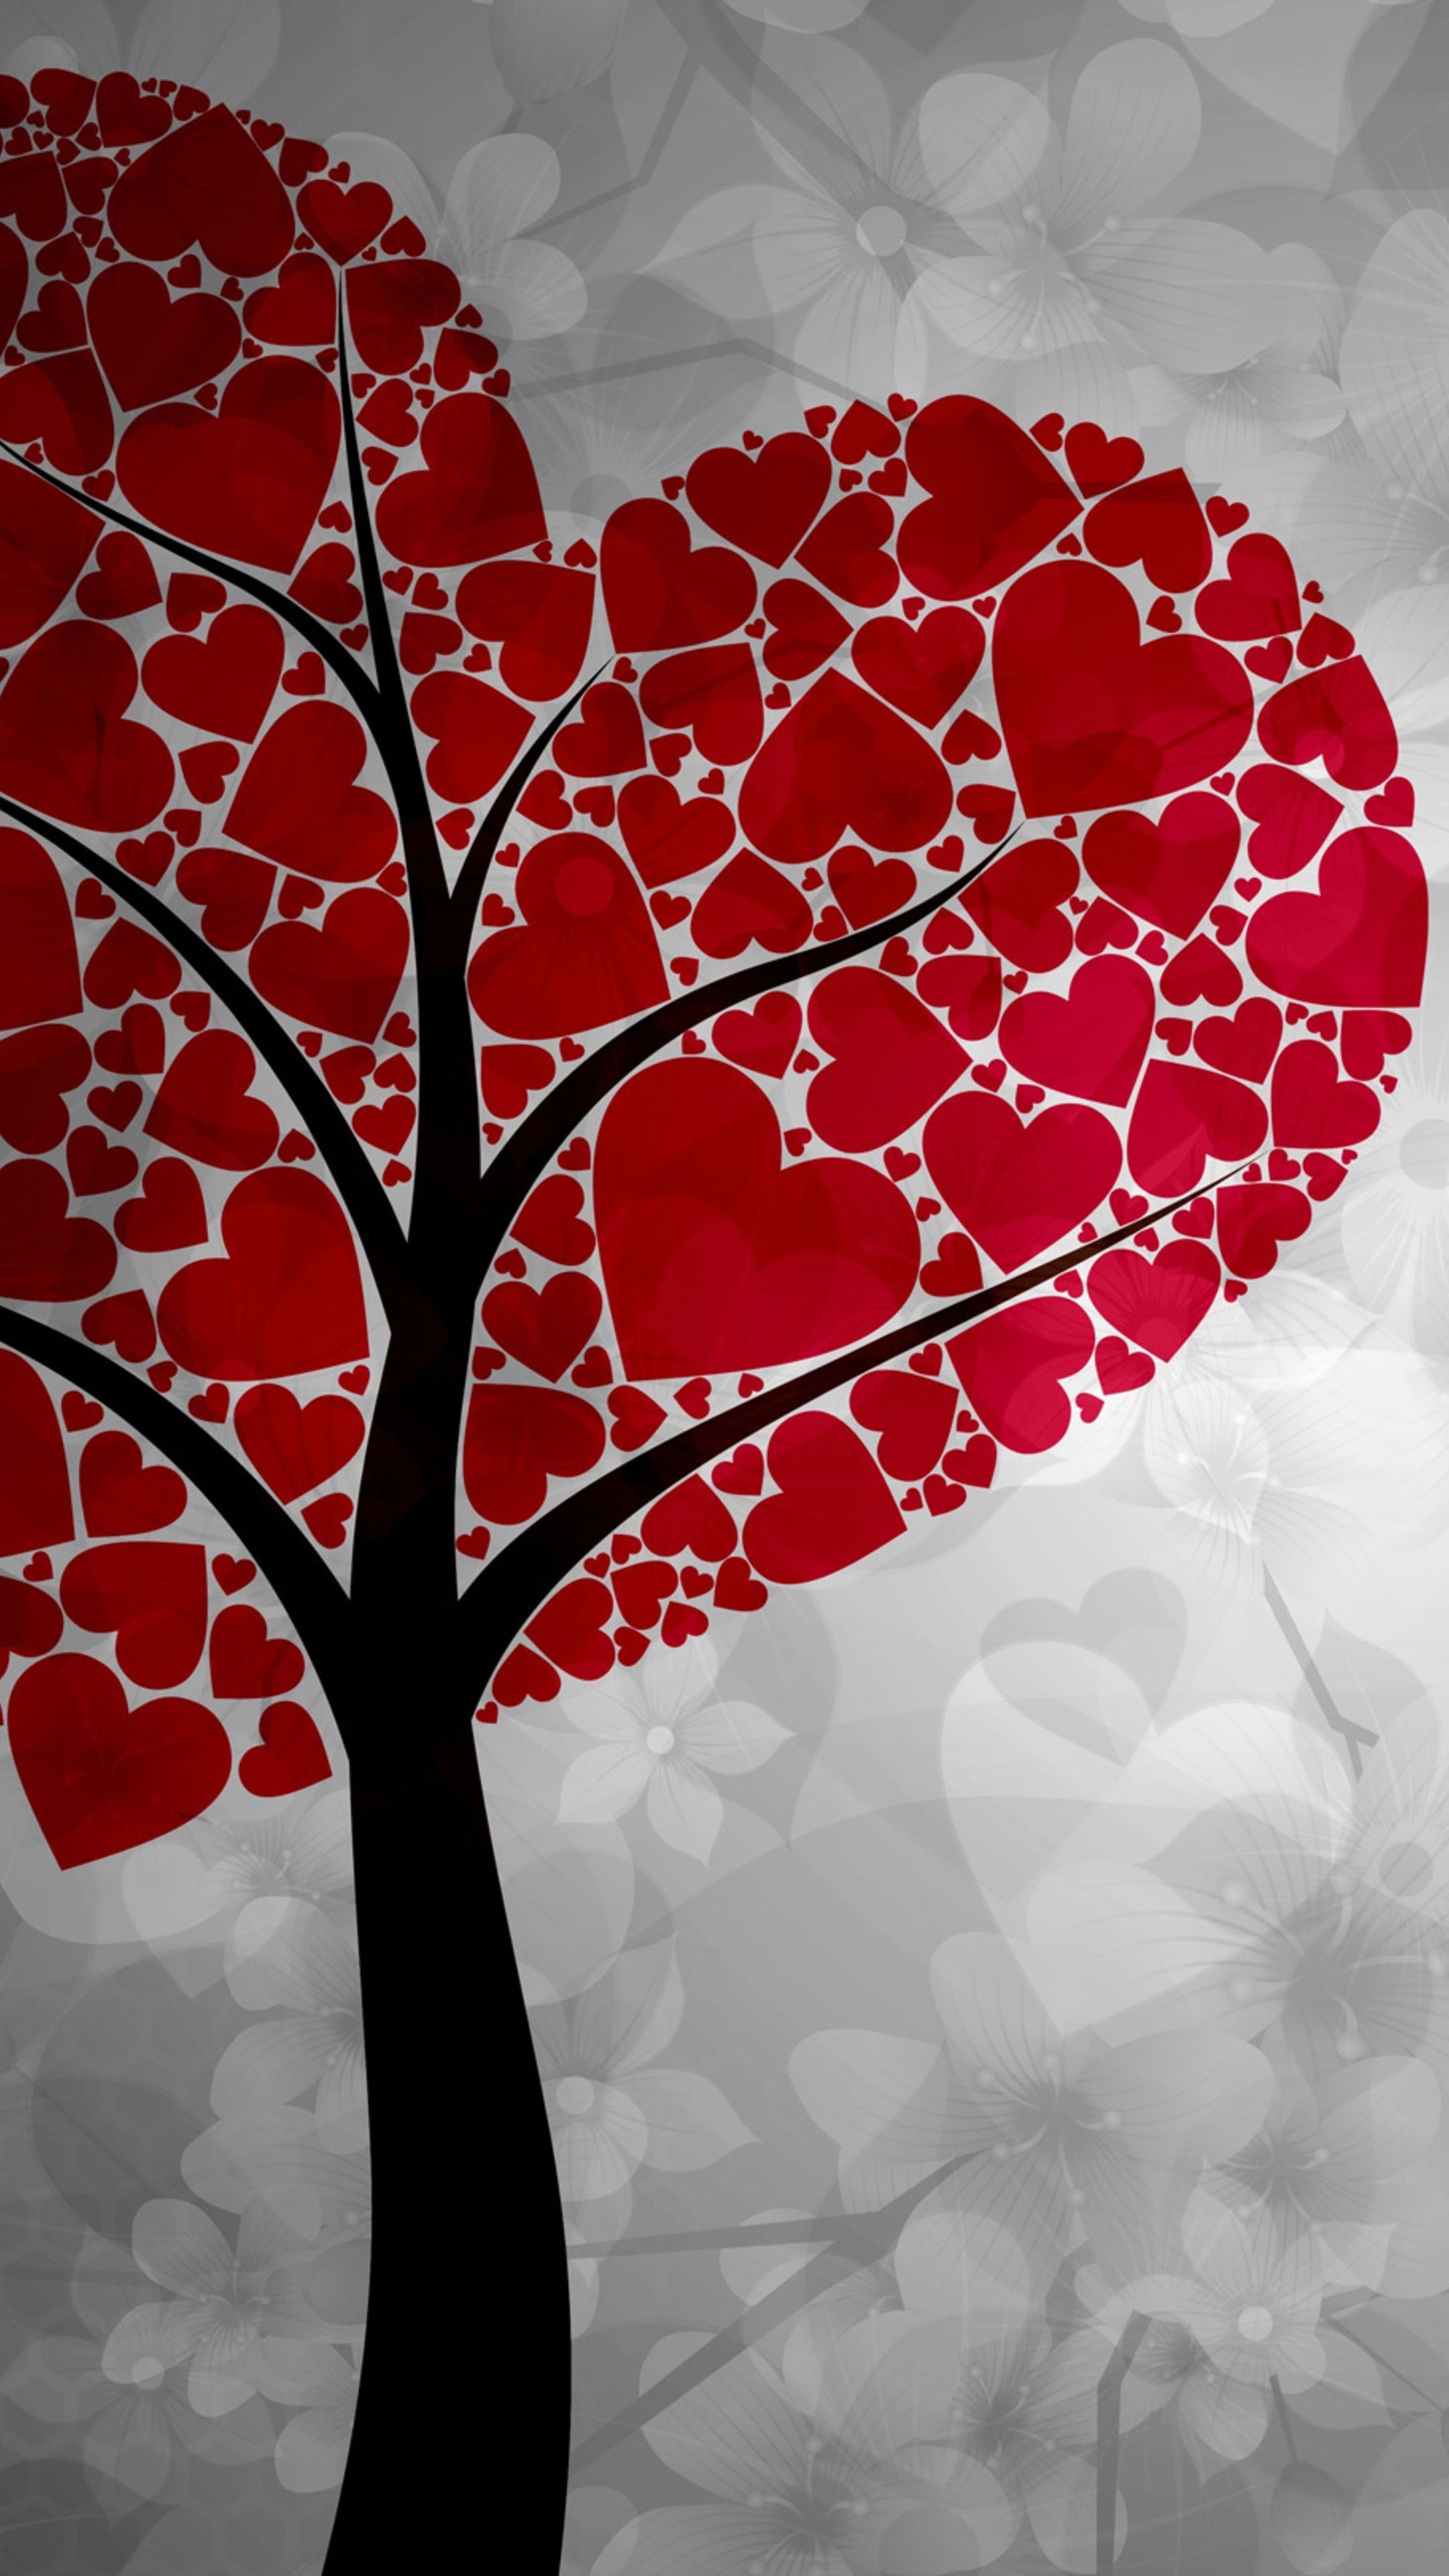 Hearts, Heart art wallpapers, Heart art backgrounds, 2160x3840 4K Handy